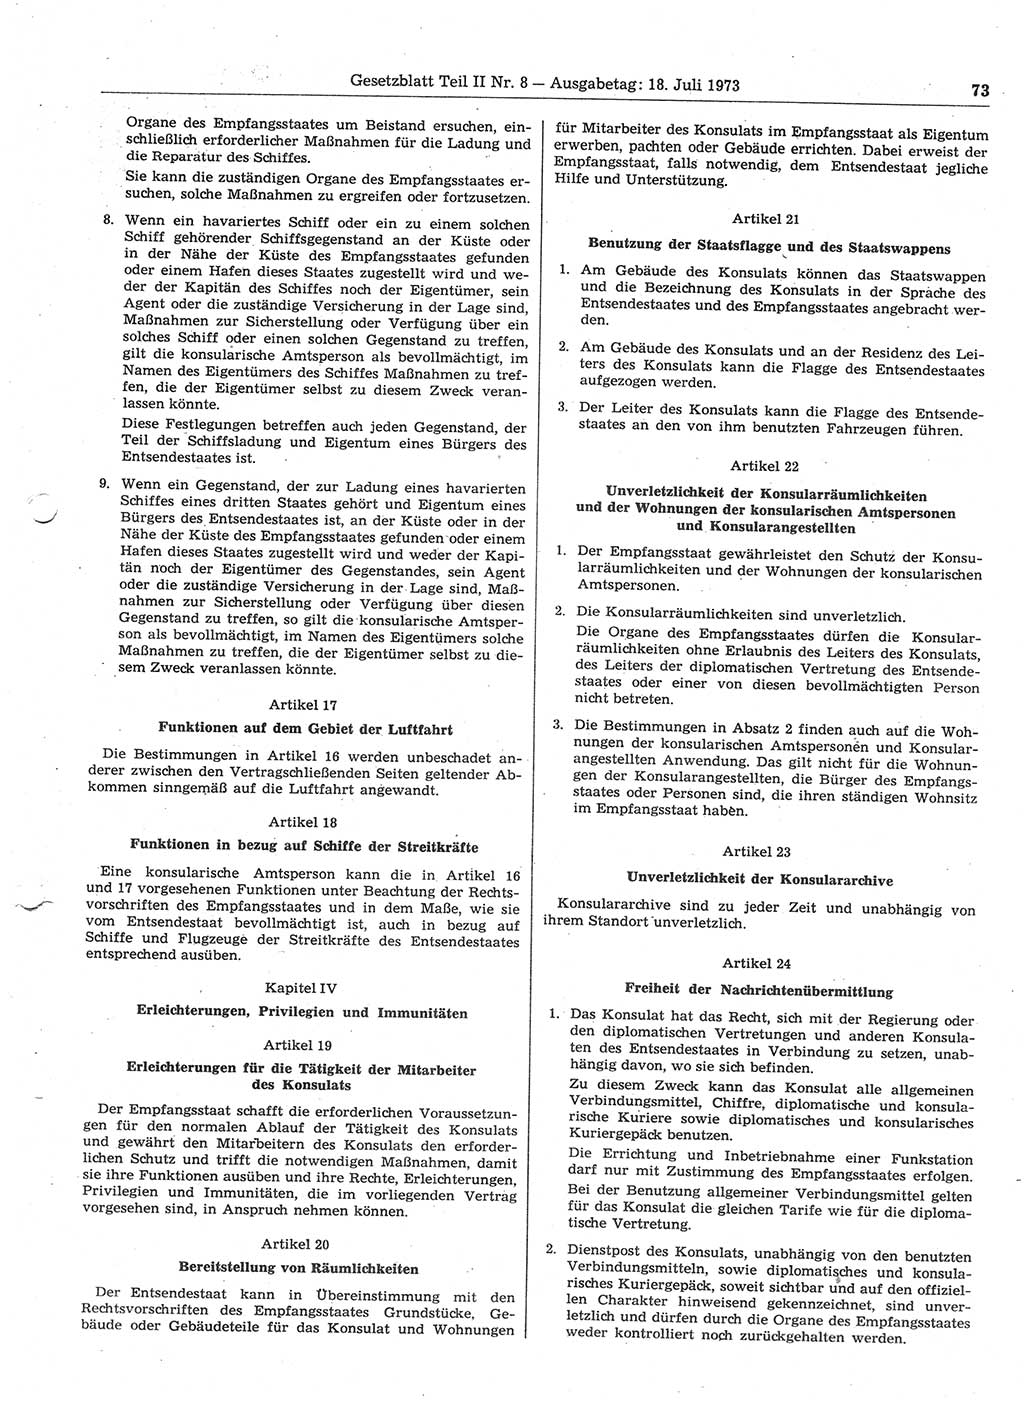 Gesetzblatt (GBl.) der Deutschen Demokratischen Republik (DDR) Teil ⅠⅠ 1973, Seite 73 (GBl. DDR ⅠⅠ 1973, S. 73)